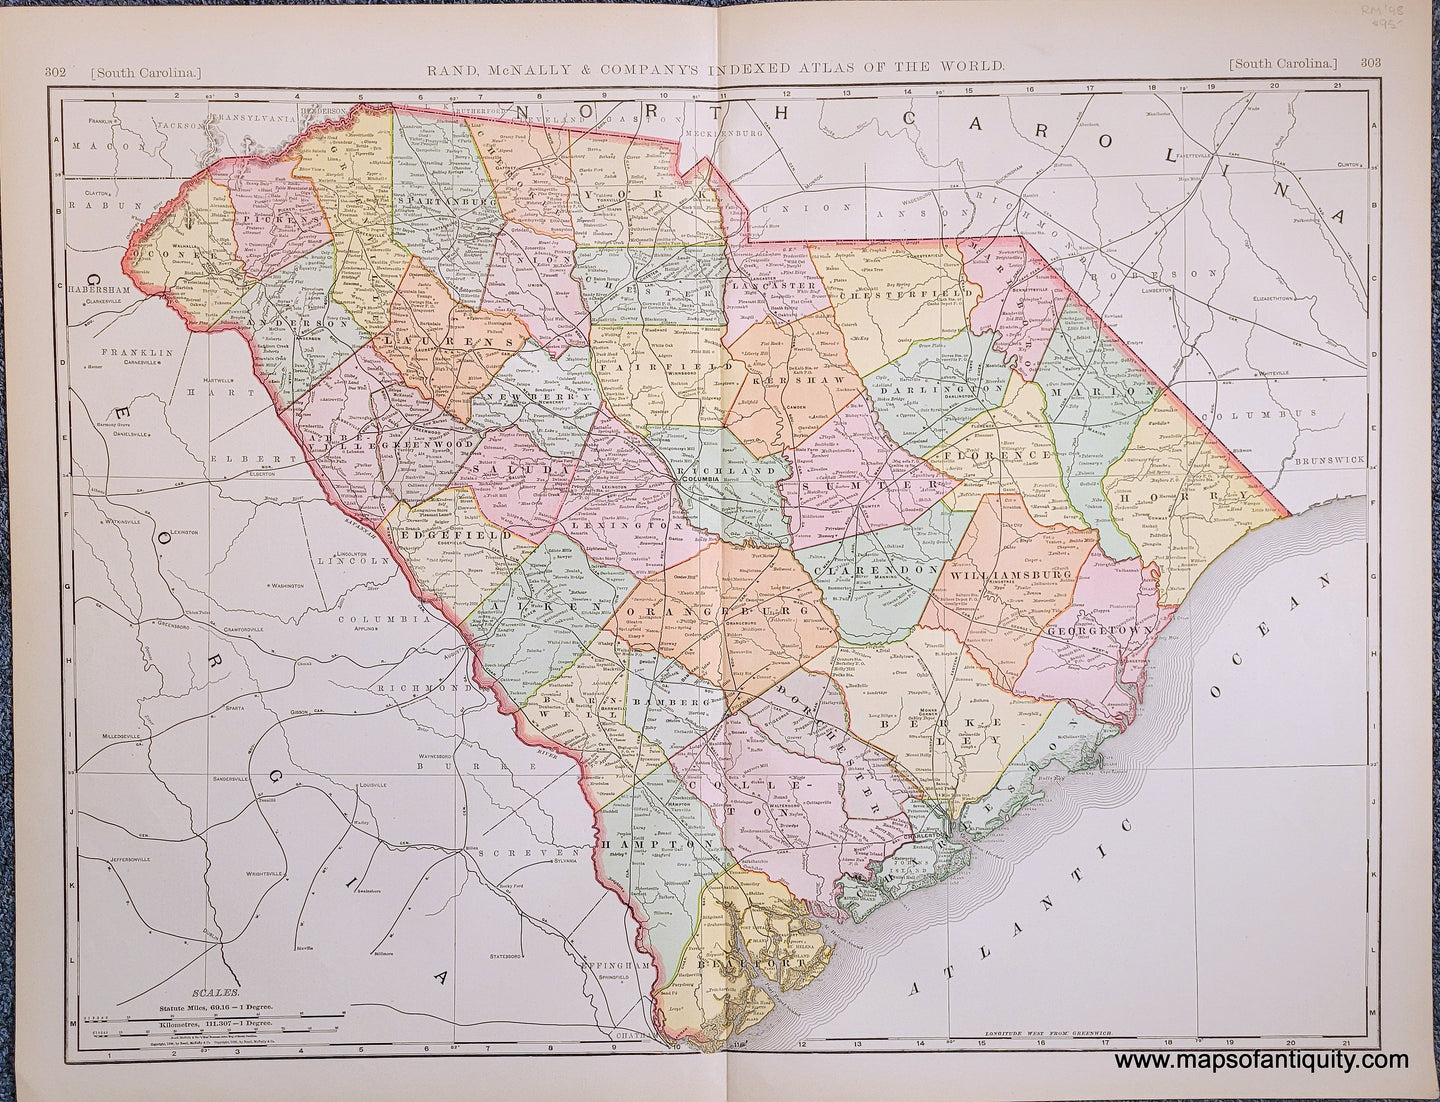 Genuine-Antique-Map-South-Carolina-South-Carolina--1898-Rand-McNally-Maps-Of-Antiquity-1800s-19th-century